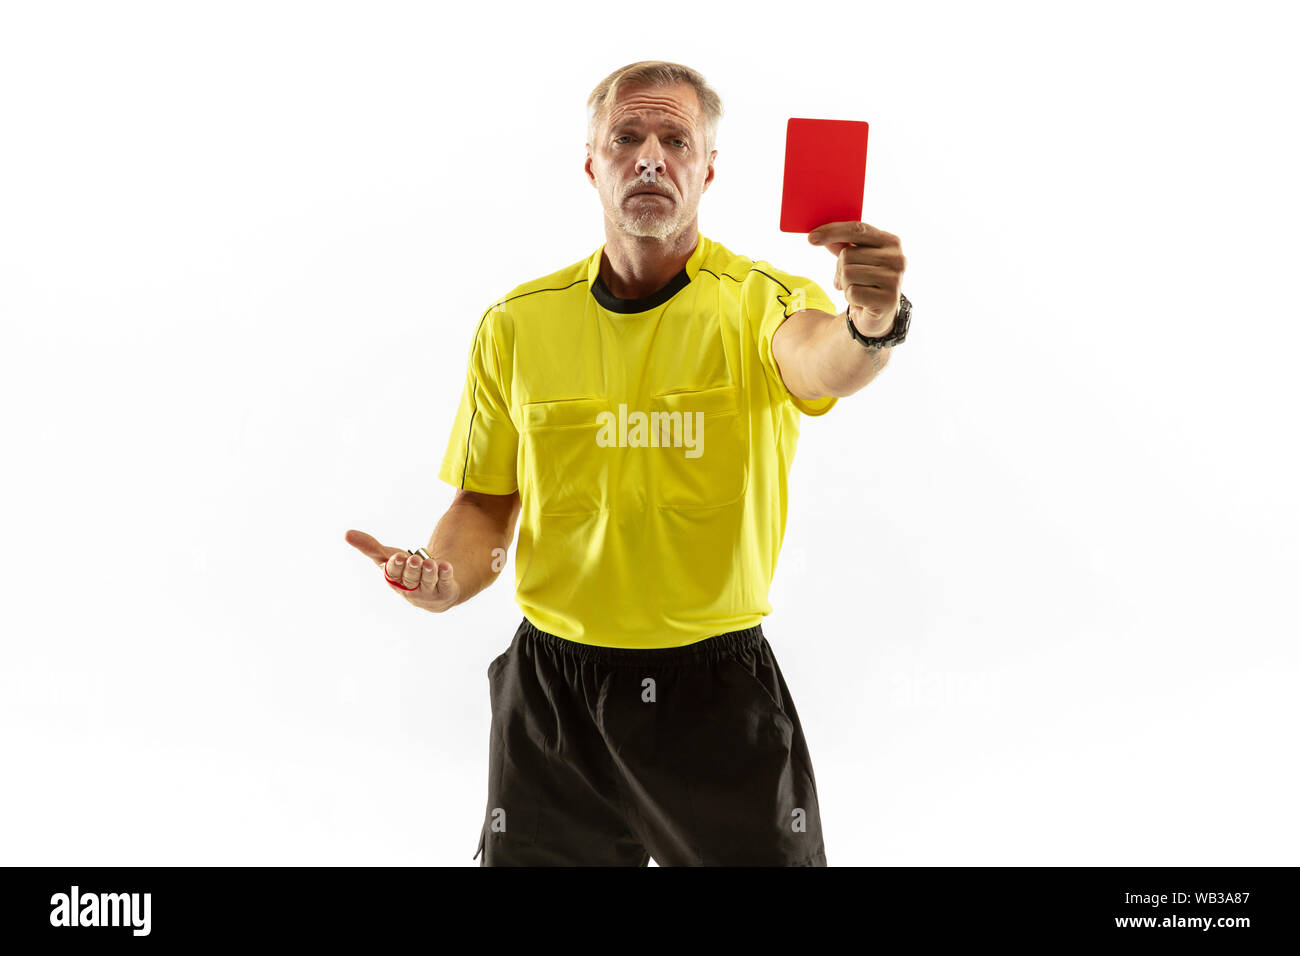 Torneo di calcio di calcio. vector realistico arbitro fischio, giallo,  palla cartellini rossi